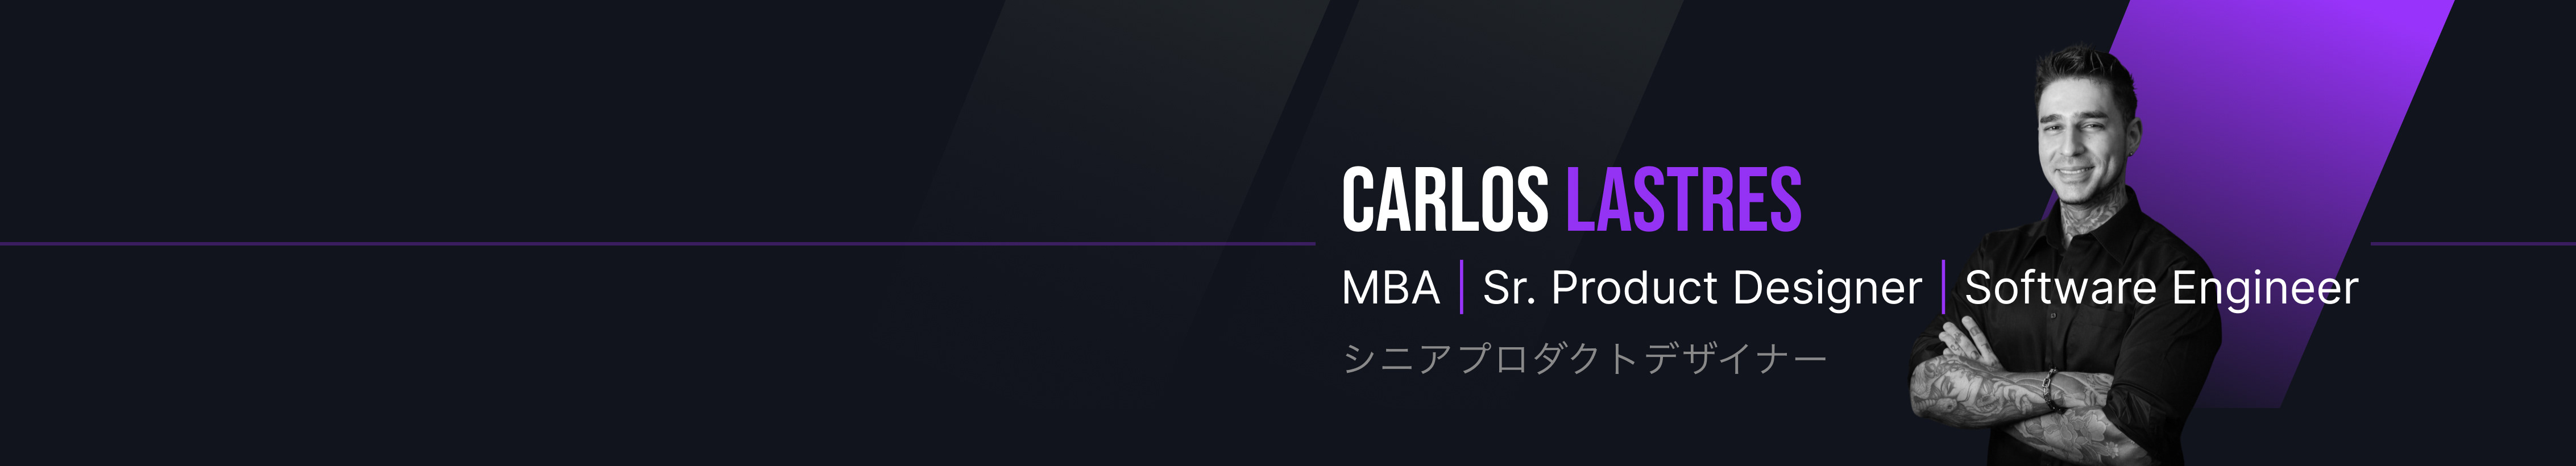 Carlos Lastres's profile banner